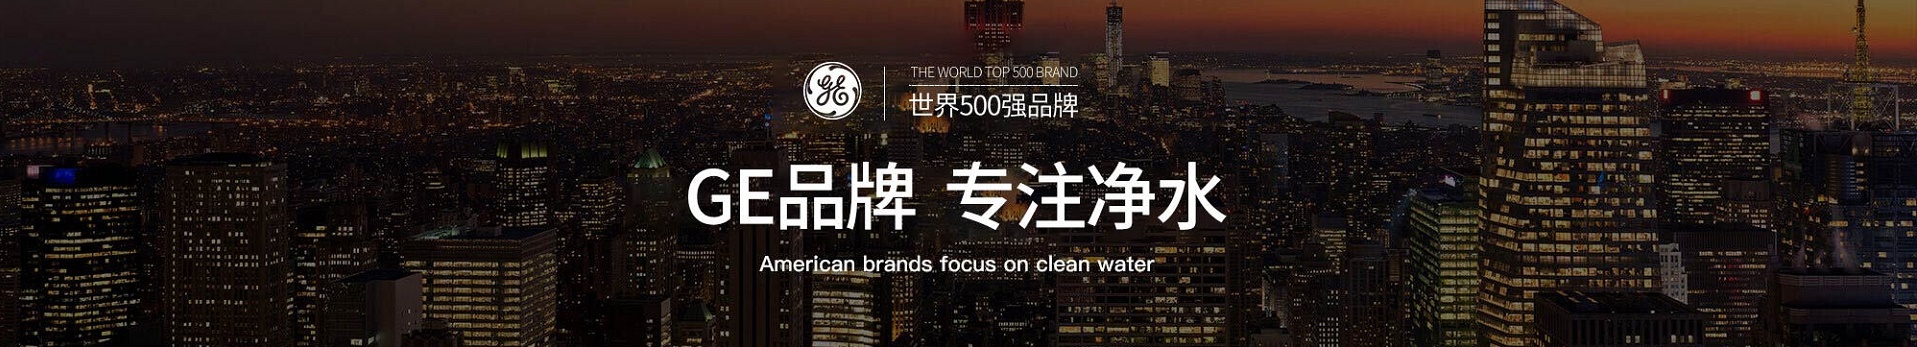 中国高端商用租赁第一品牌英尼克净水器水处理